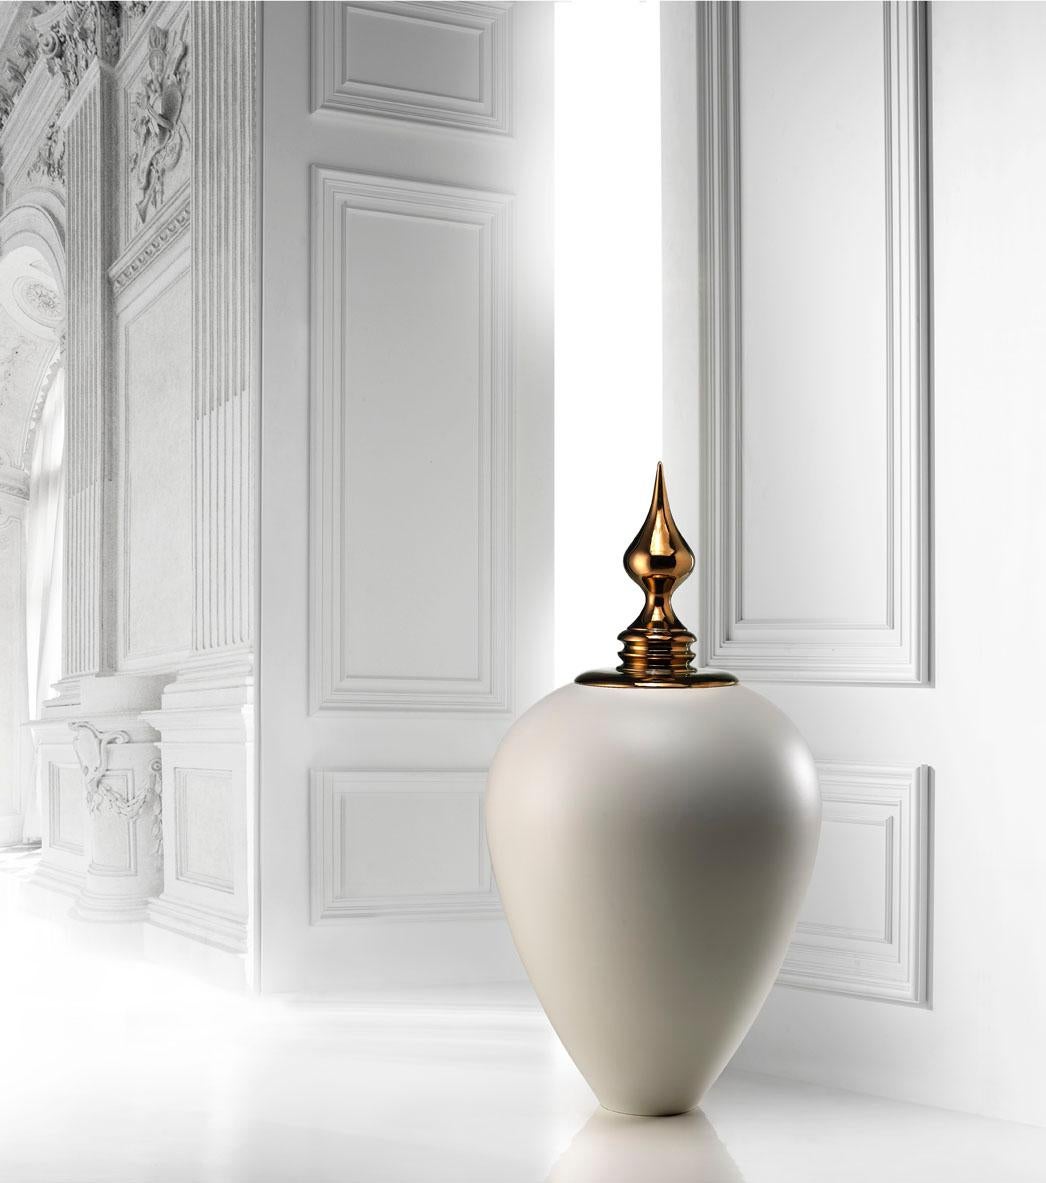 Vase aus Keramik weiß glasiert 
mit handgefertigter Bronzeplatte
NADIRA- Code VS012, 
maße: Höhe 110,0 cm, 
durchmesser 60,0 cm.